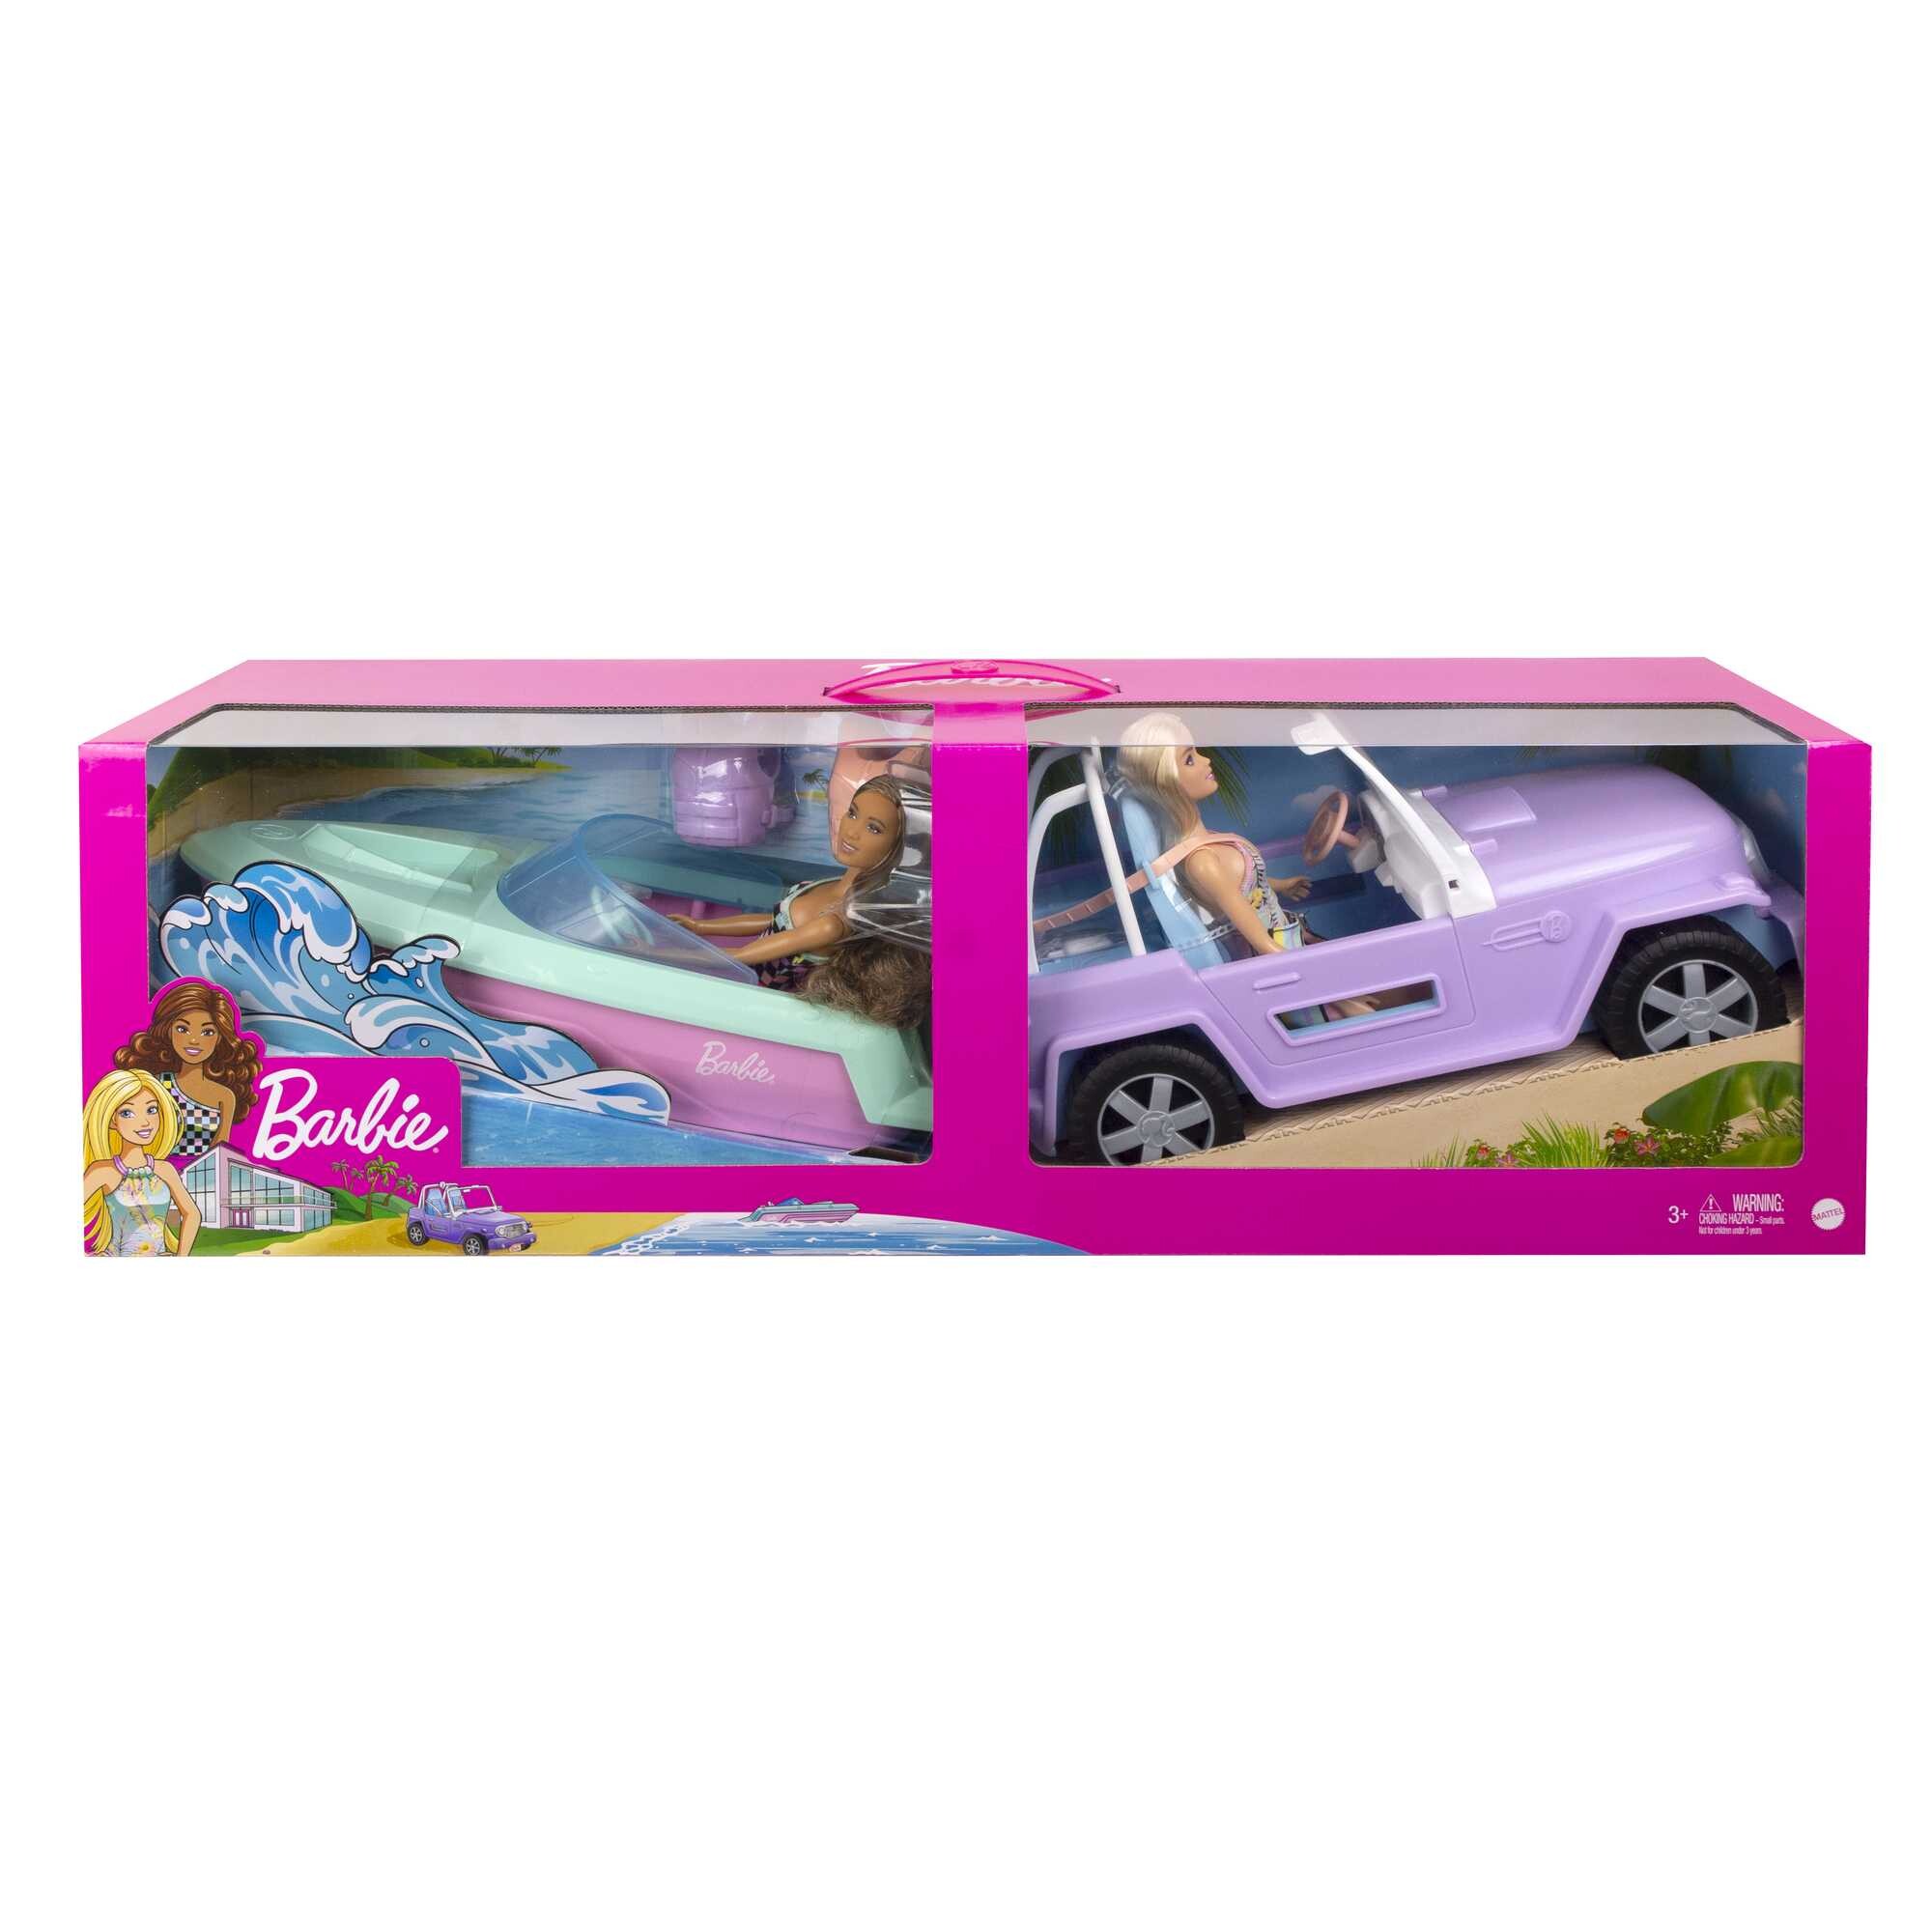 Barbie® set con 2 bambole con abiti e accessori, veicolo fuoristrada, barca galleggiante e 2 giubbotti di salvataggio - Barbie